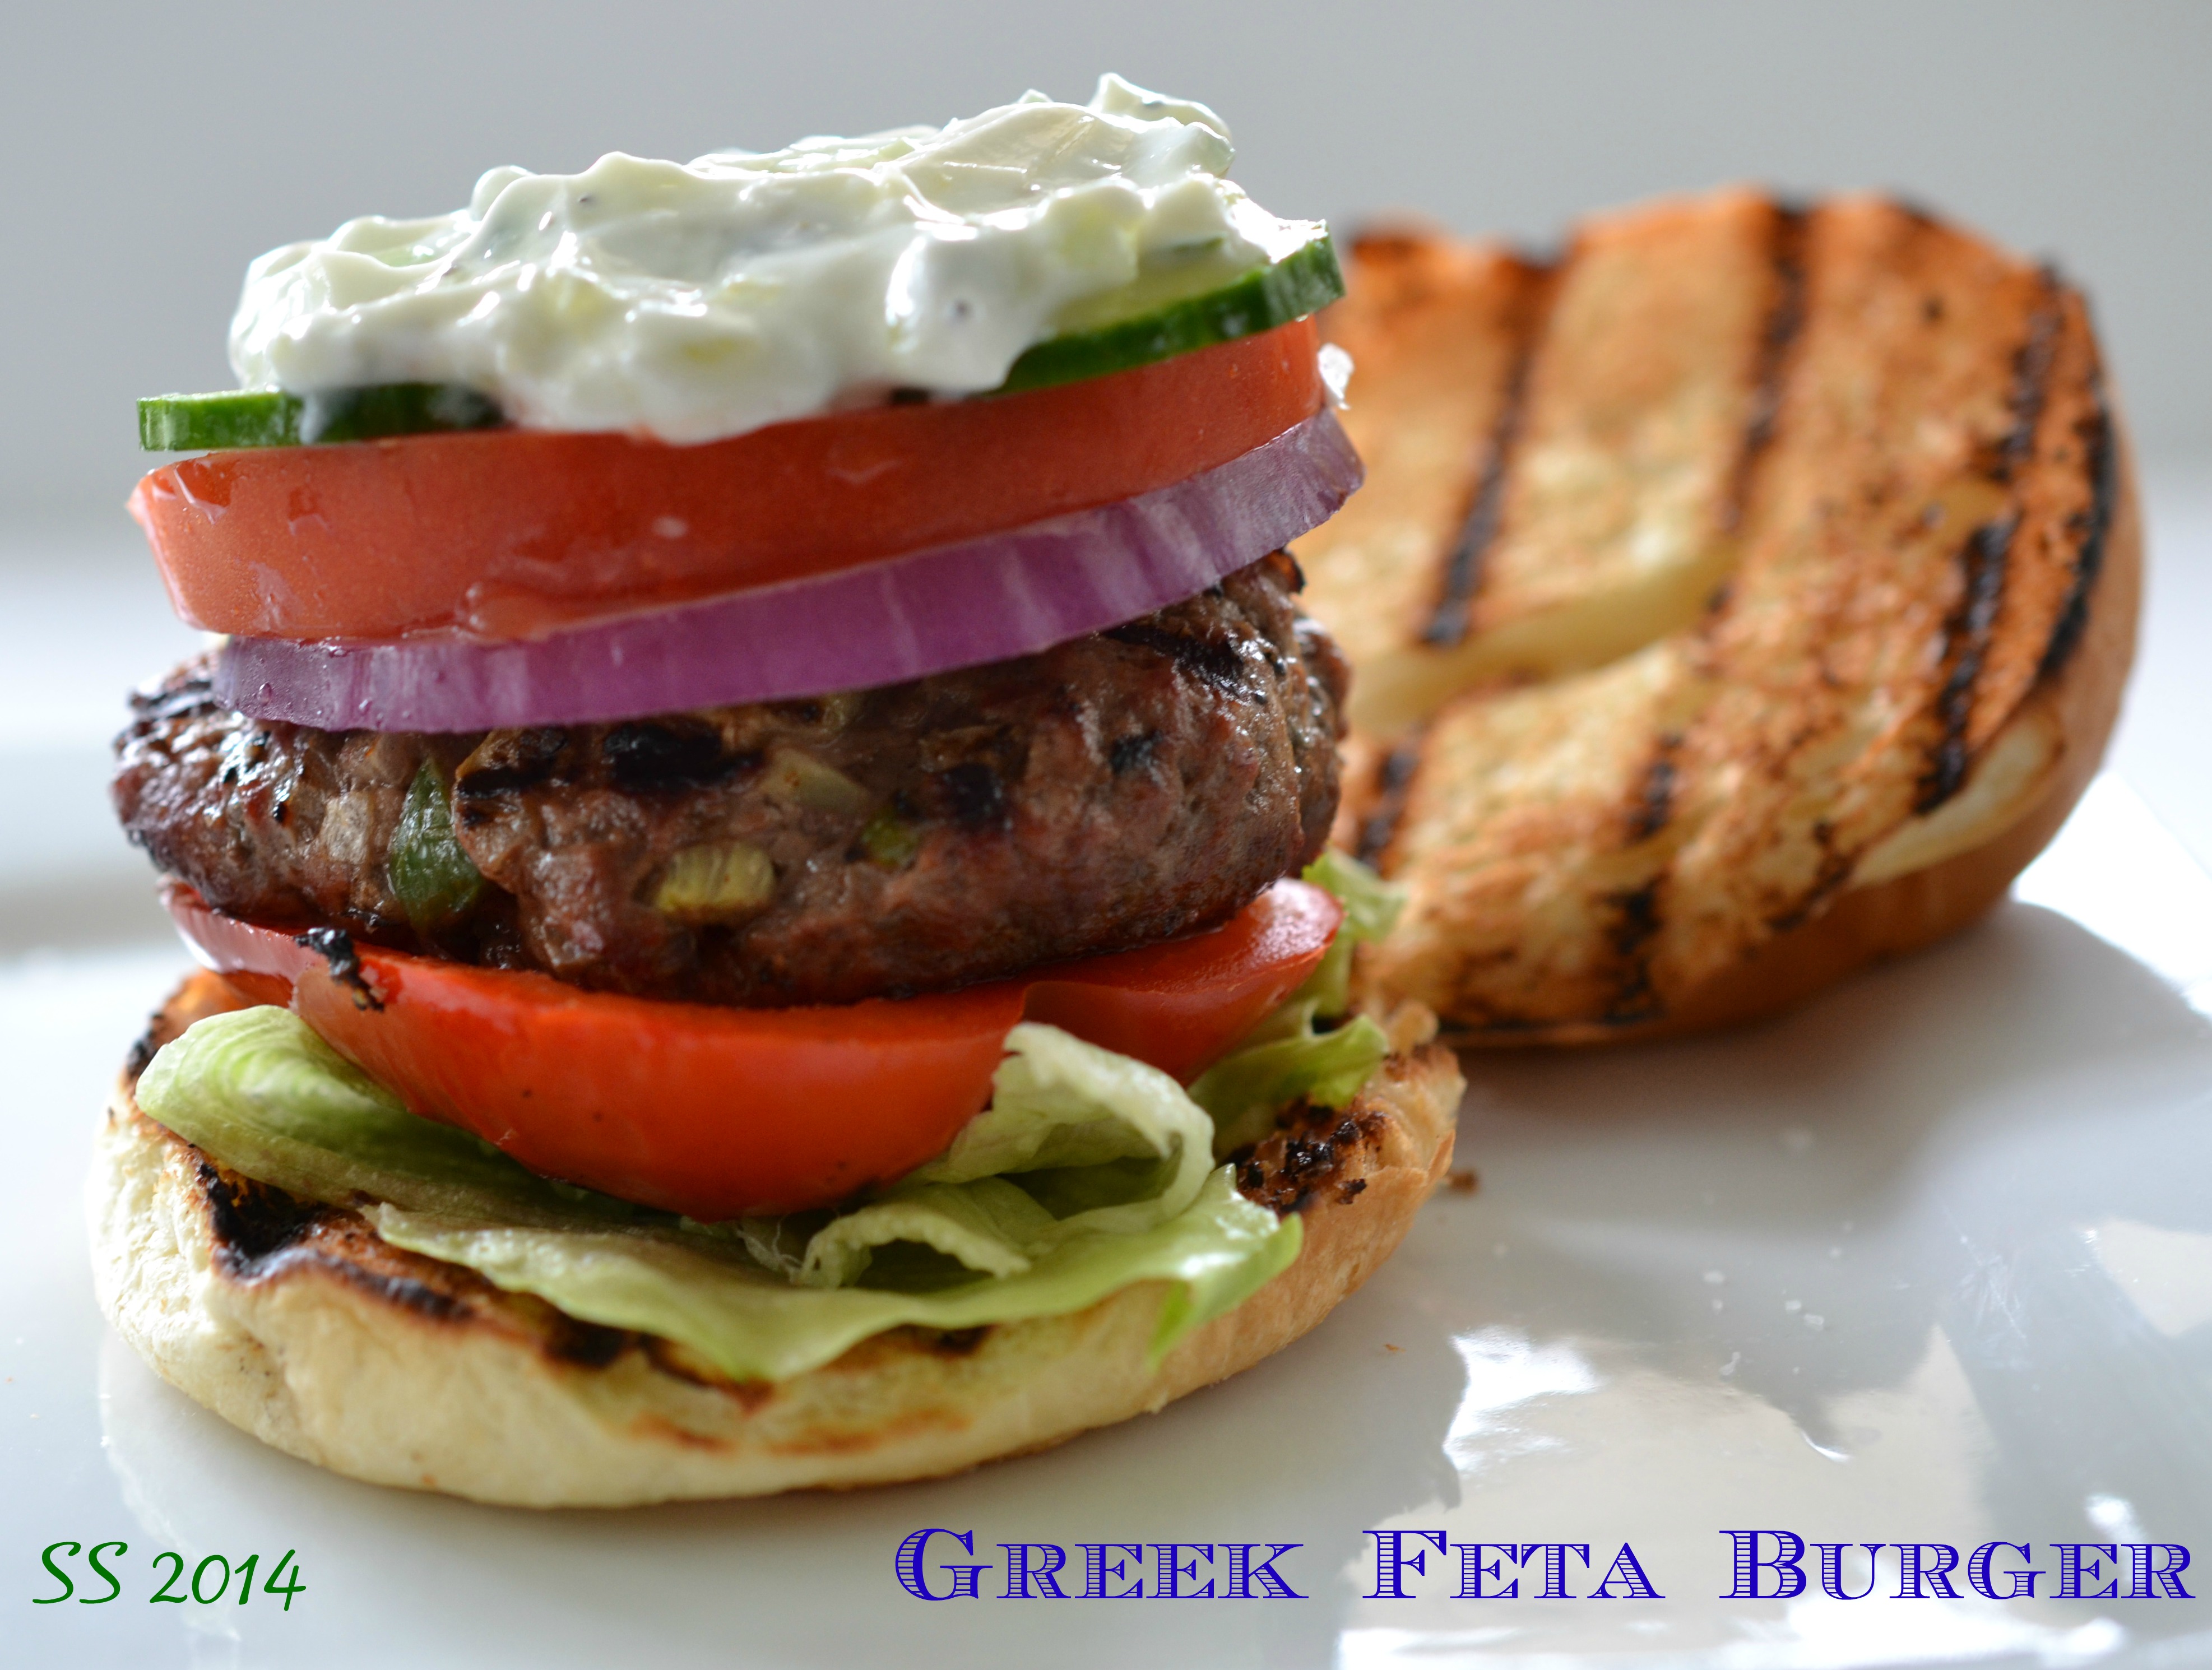 Greek Feta Burger – Shredded Sprout